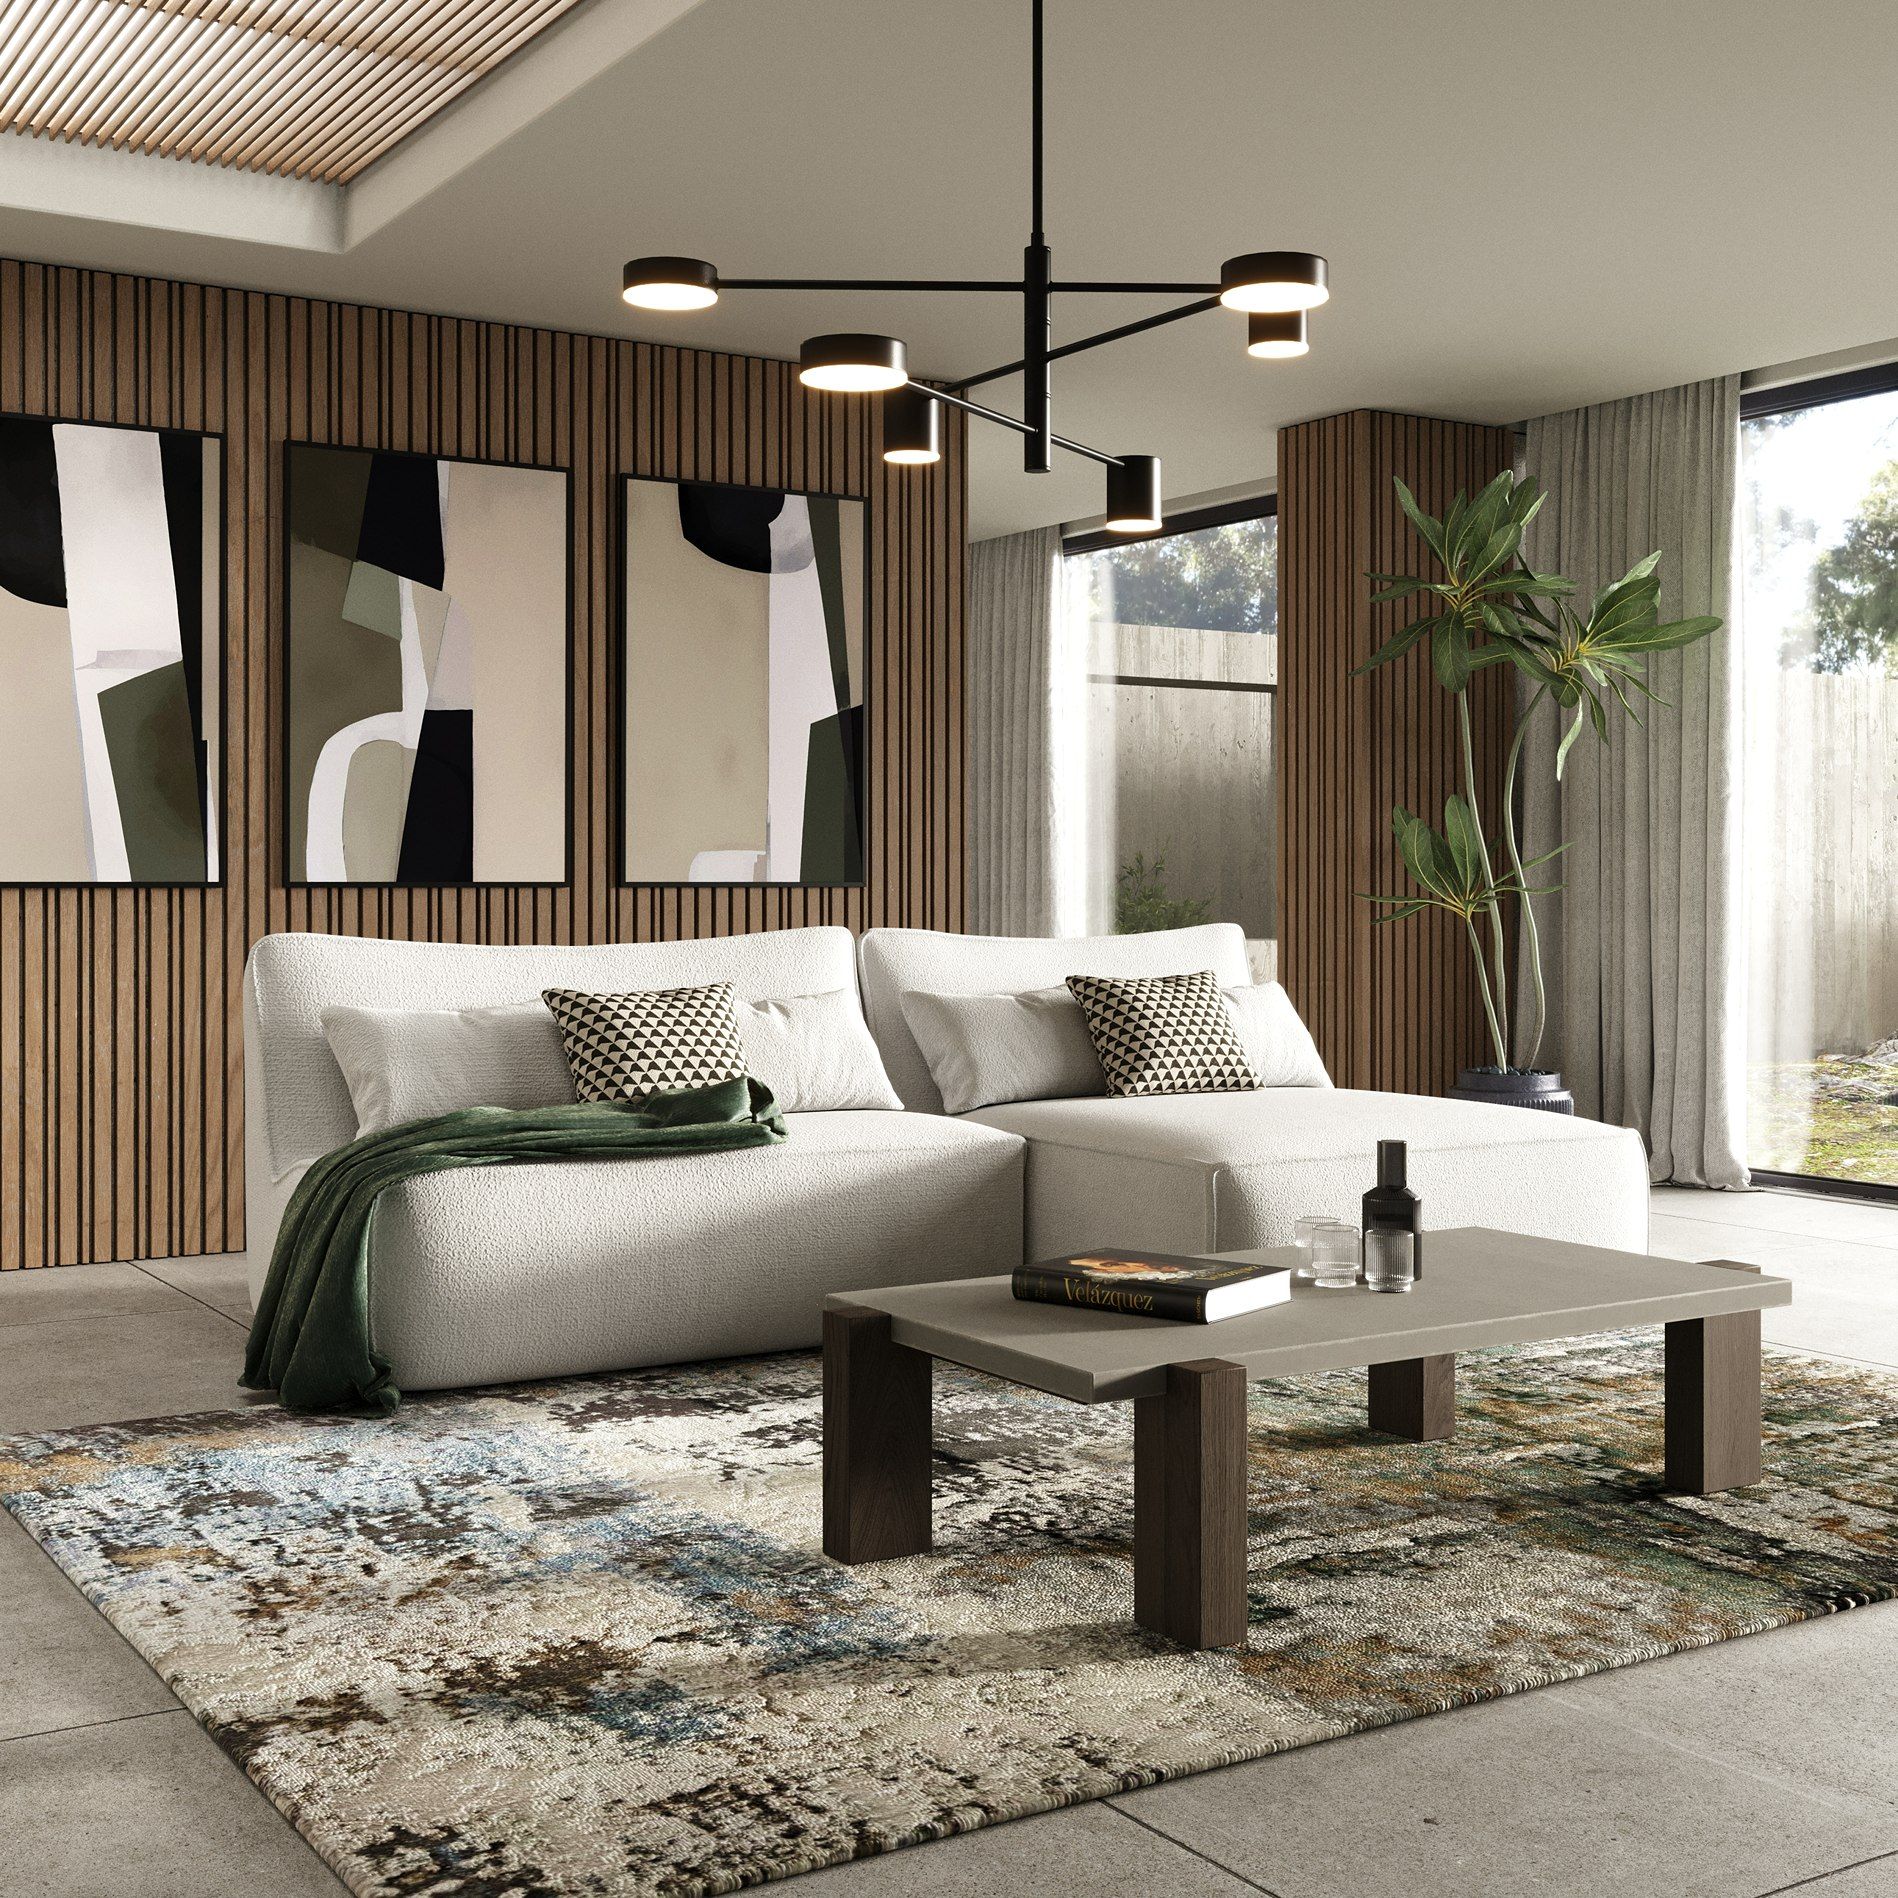 Divani Casa Racine Modern White Fabric Modular Sectional Sofa 1